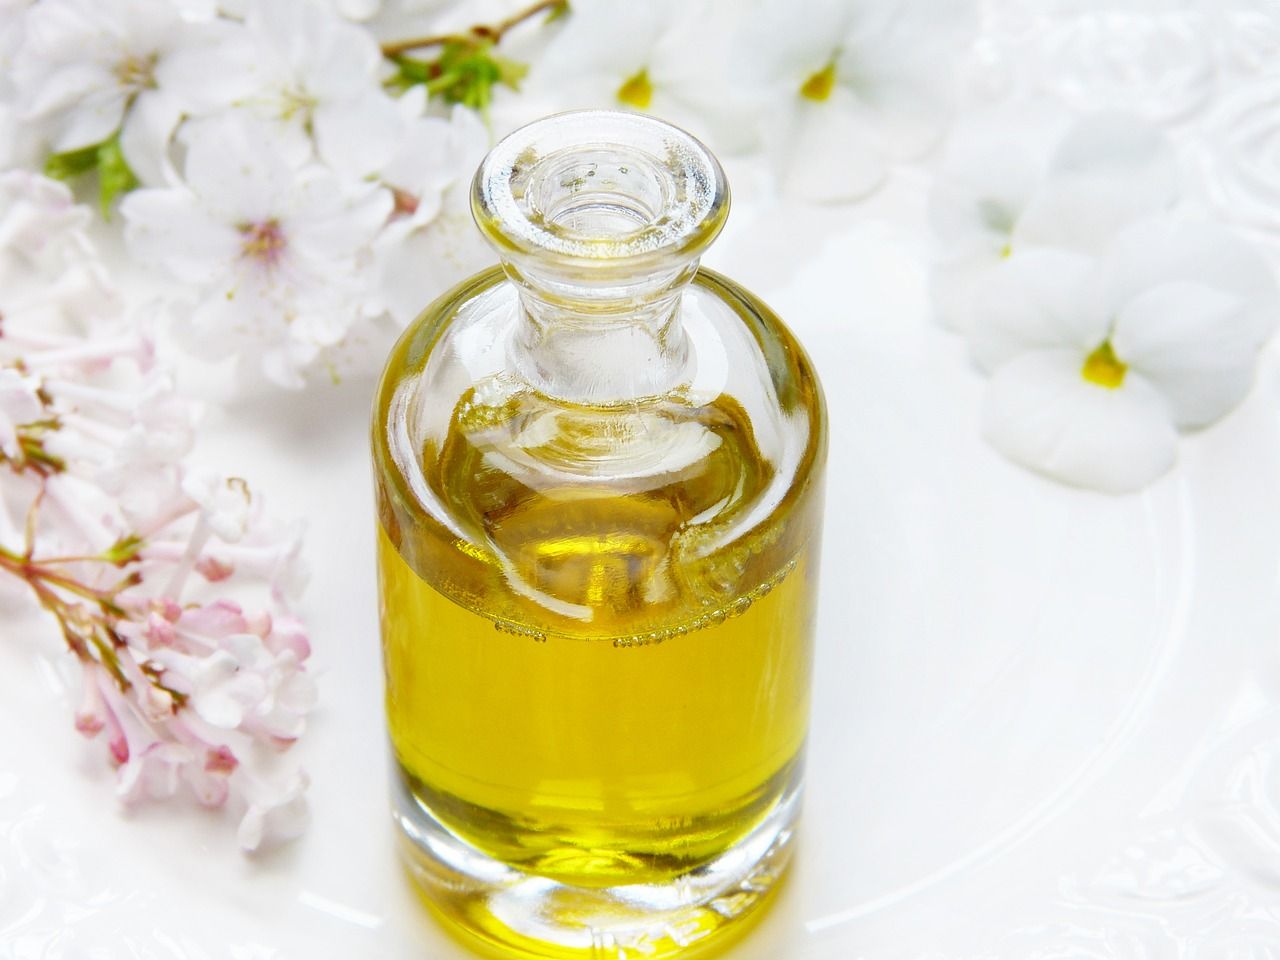 10 ciekawostek na temat oleju arganowego